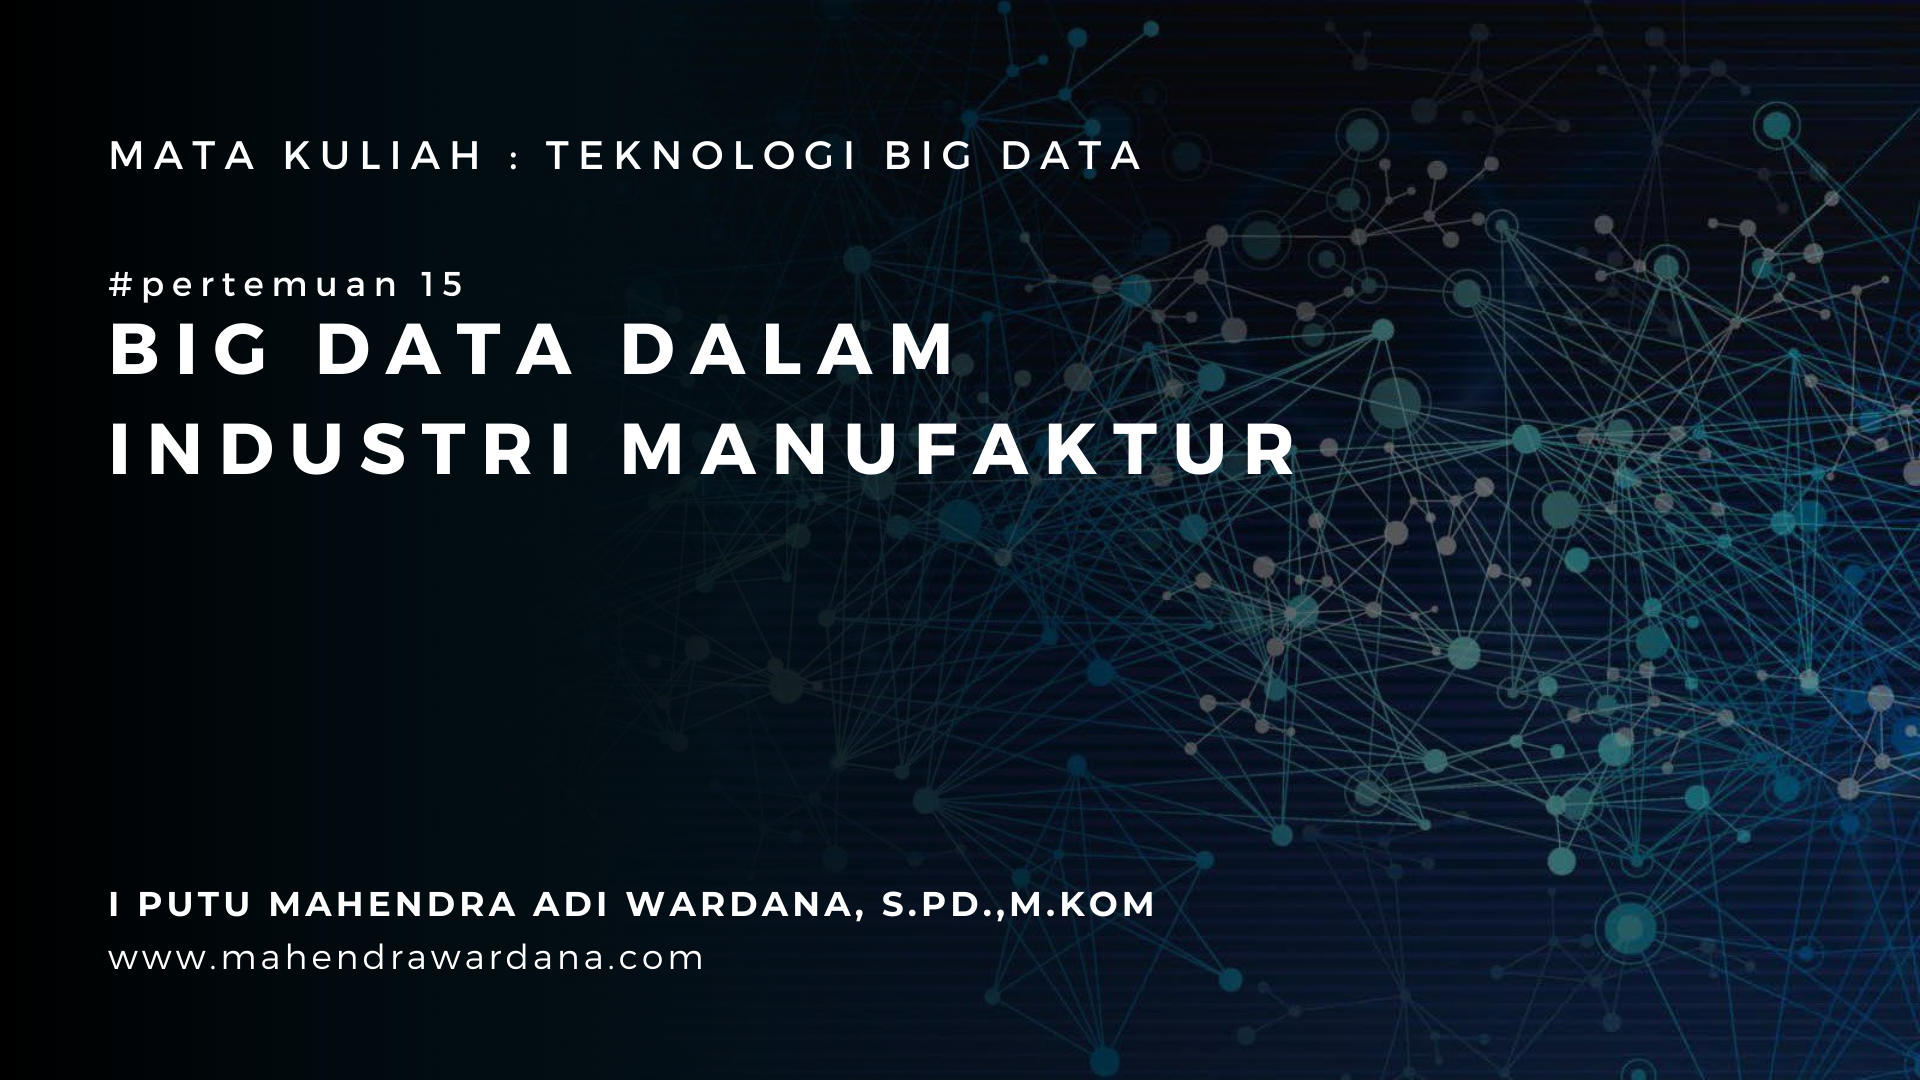 Pertemuan 15 - Big Data Dalam Industri Manufaktur